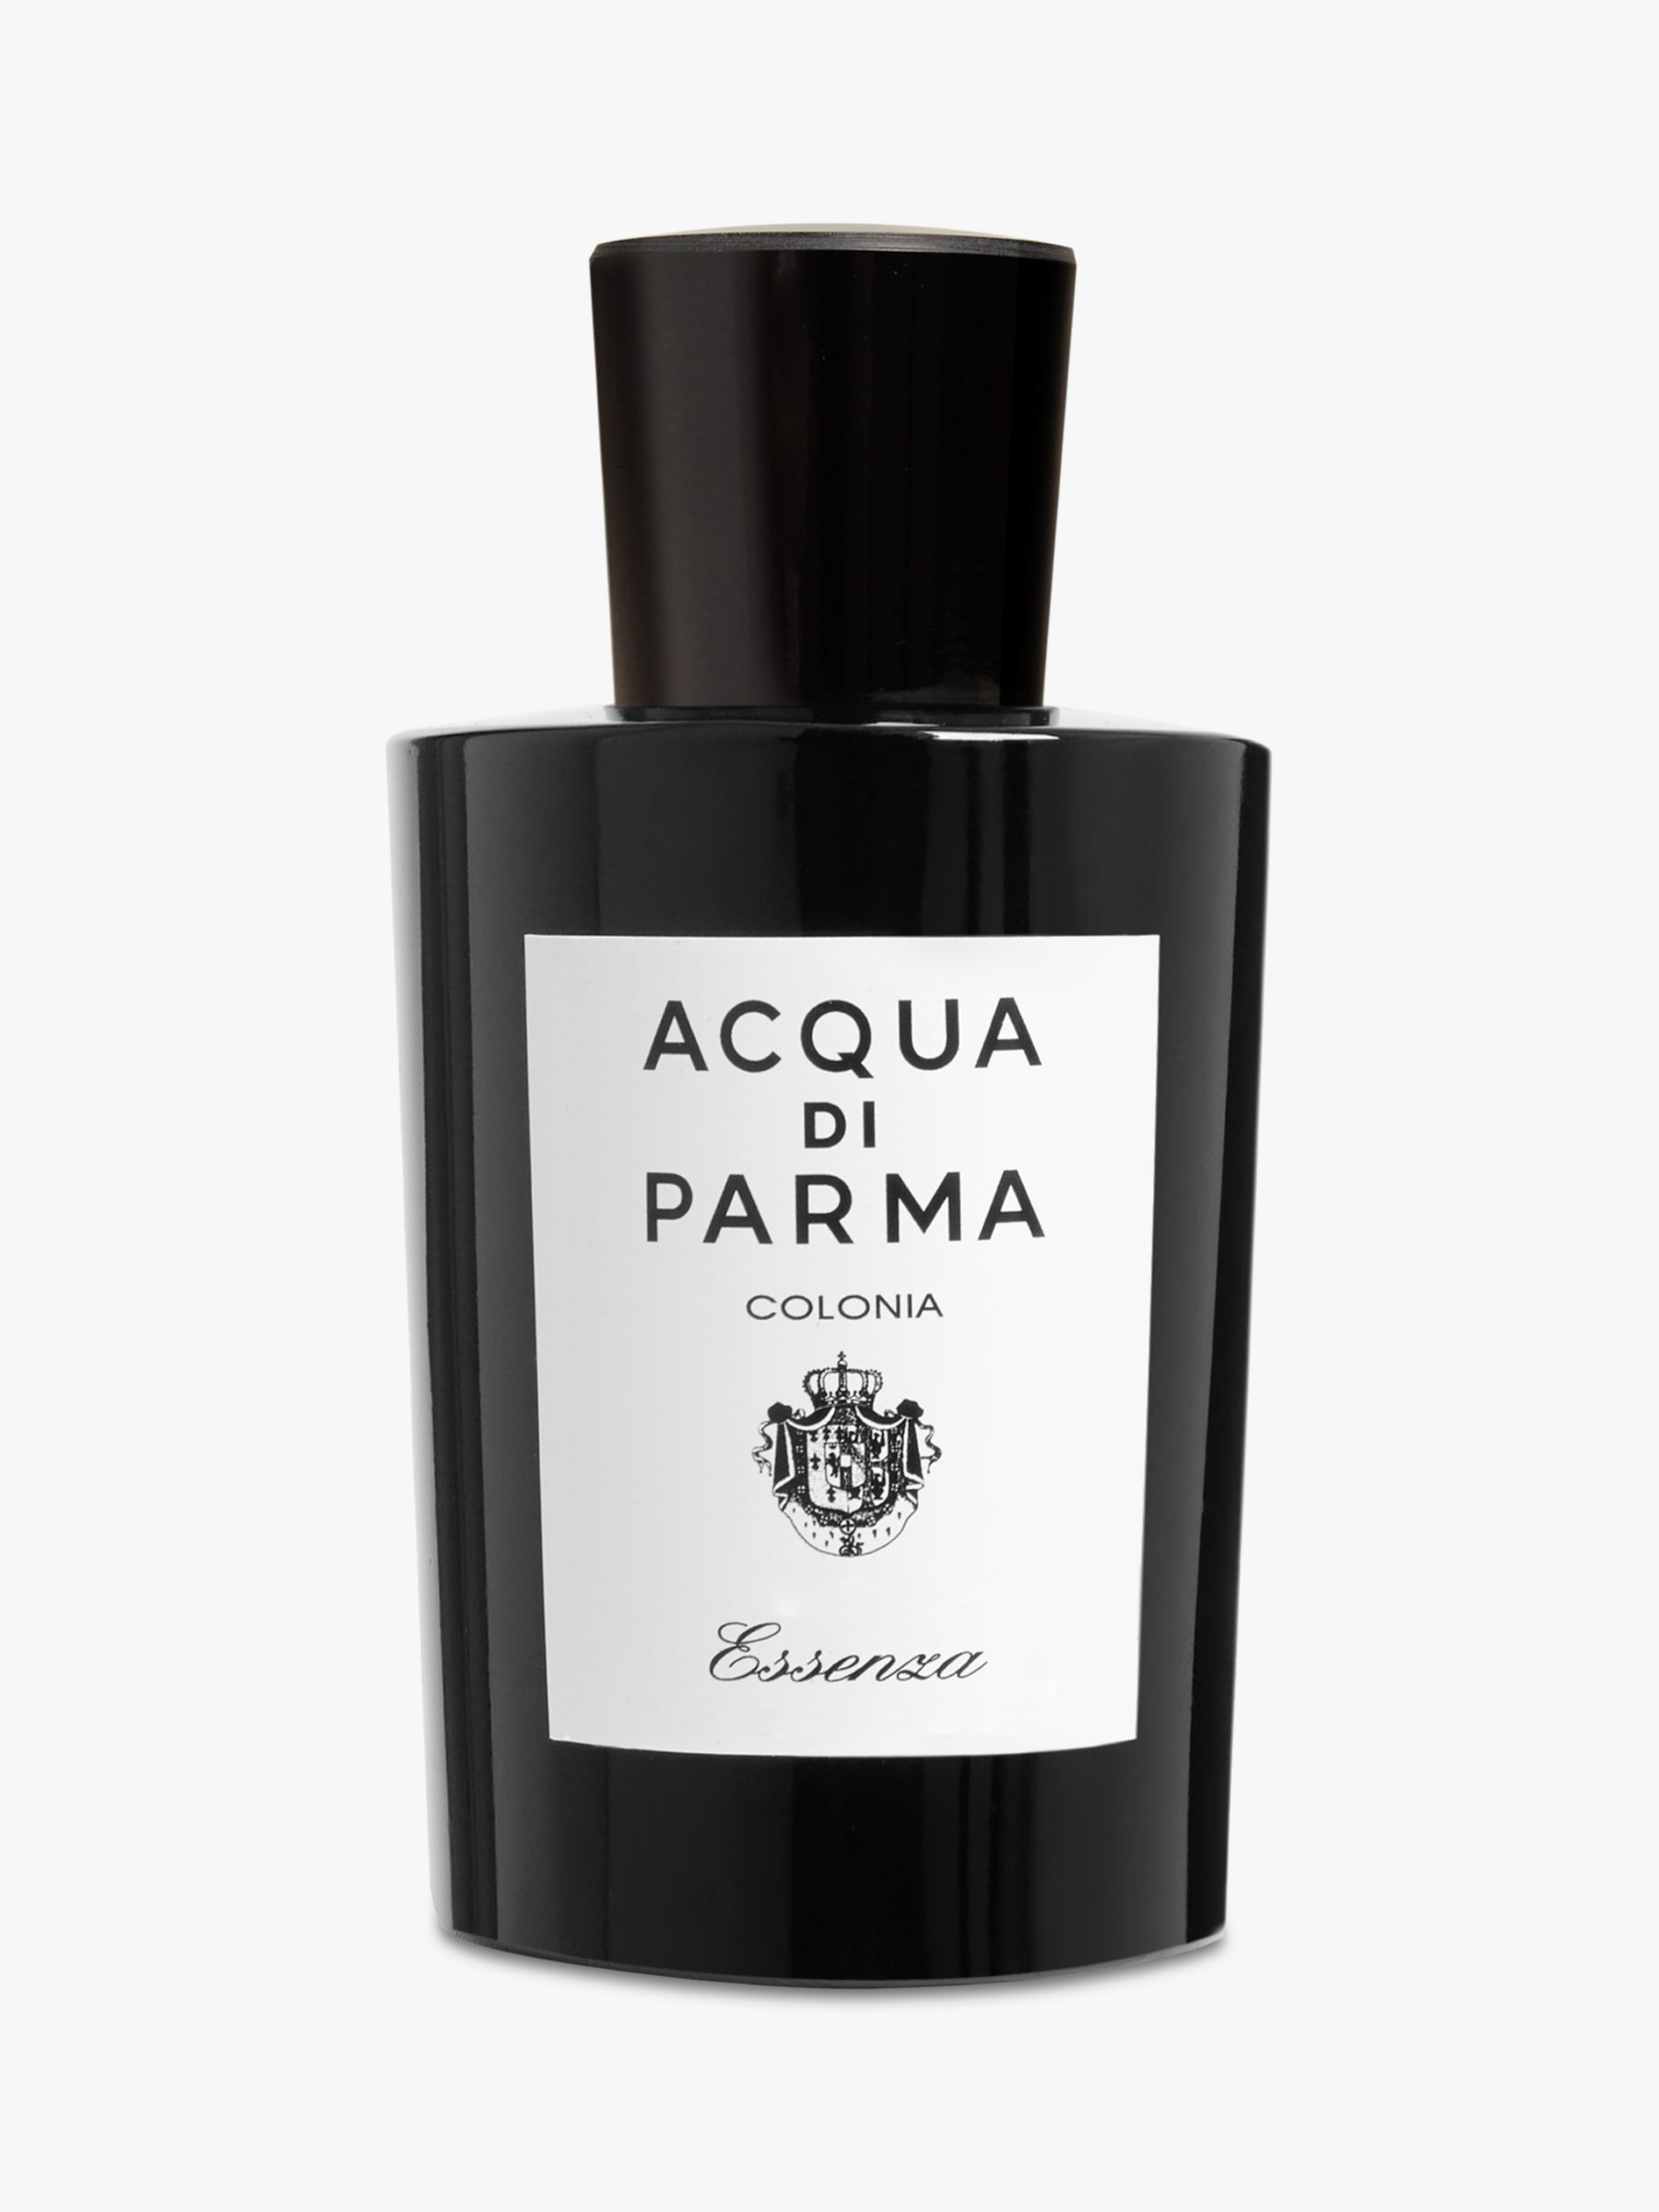 27 " Мужественные ароматы, которые ставят под сомнение бинарный аромат» /></p>
<p> Acqua di Parma Colonia Essenza £80 </p>
<p class=